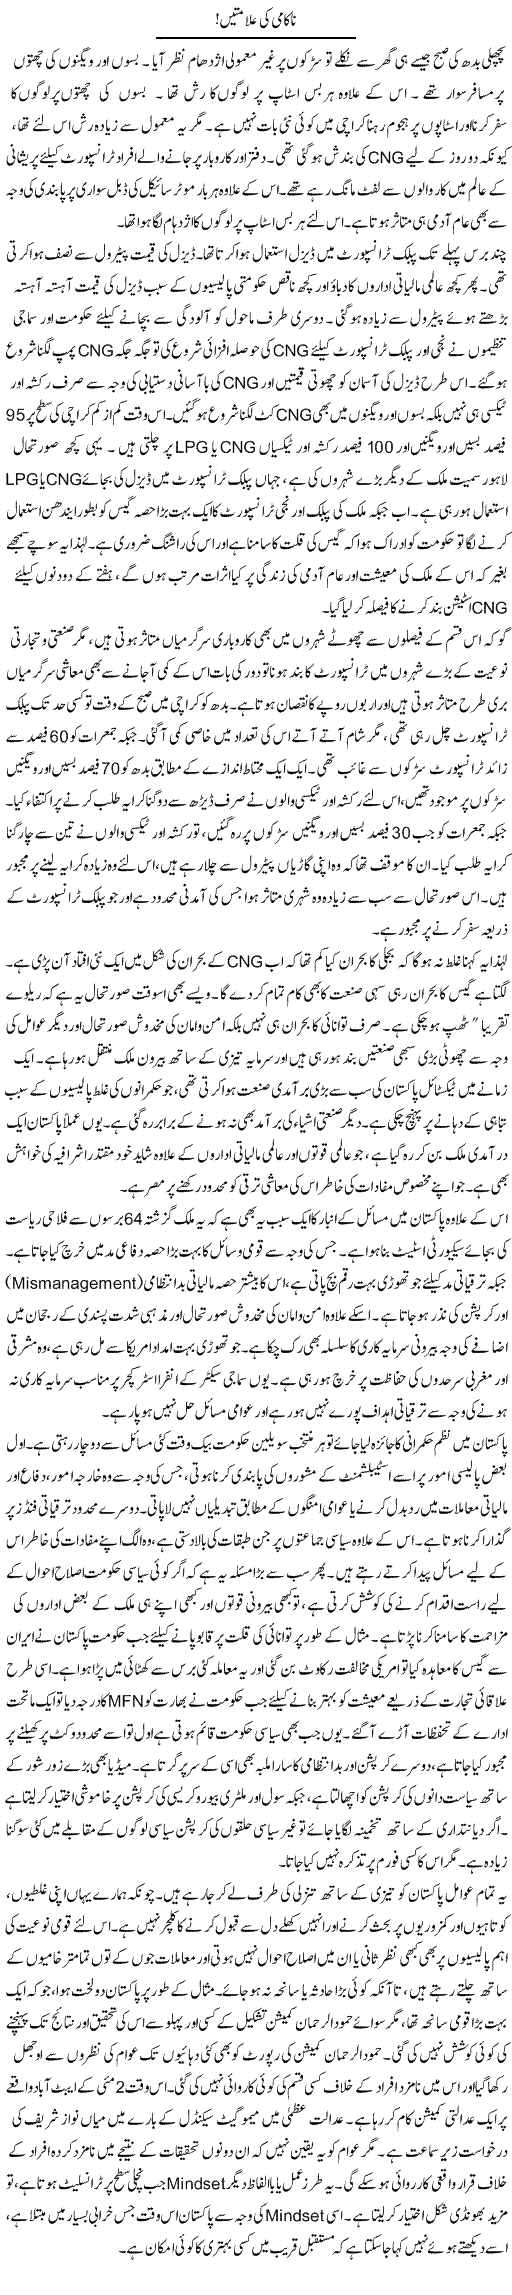 CNG Problem Express Column Muqtada Mansoor 7 December 2011